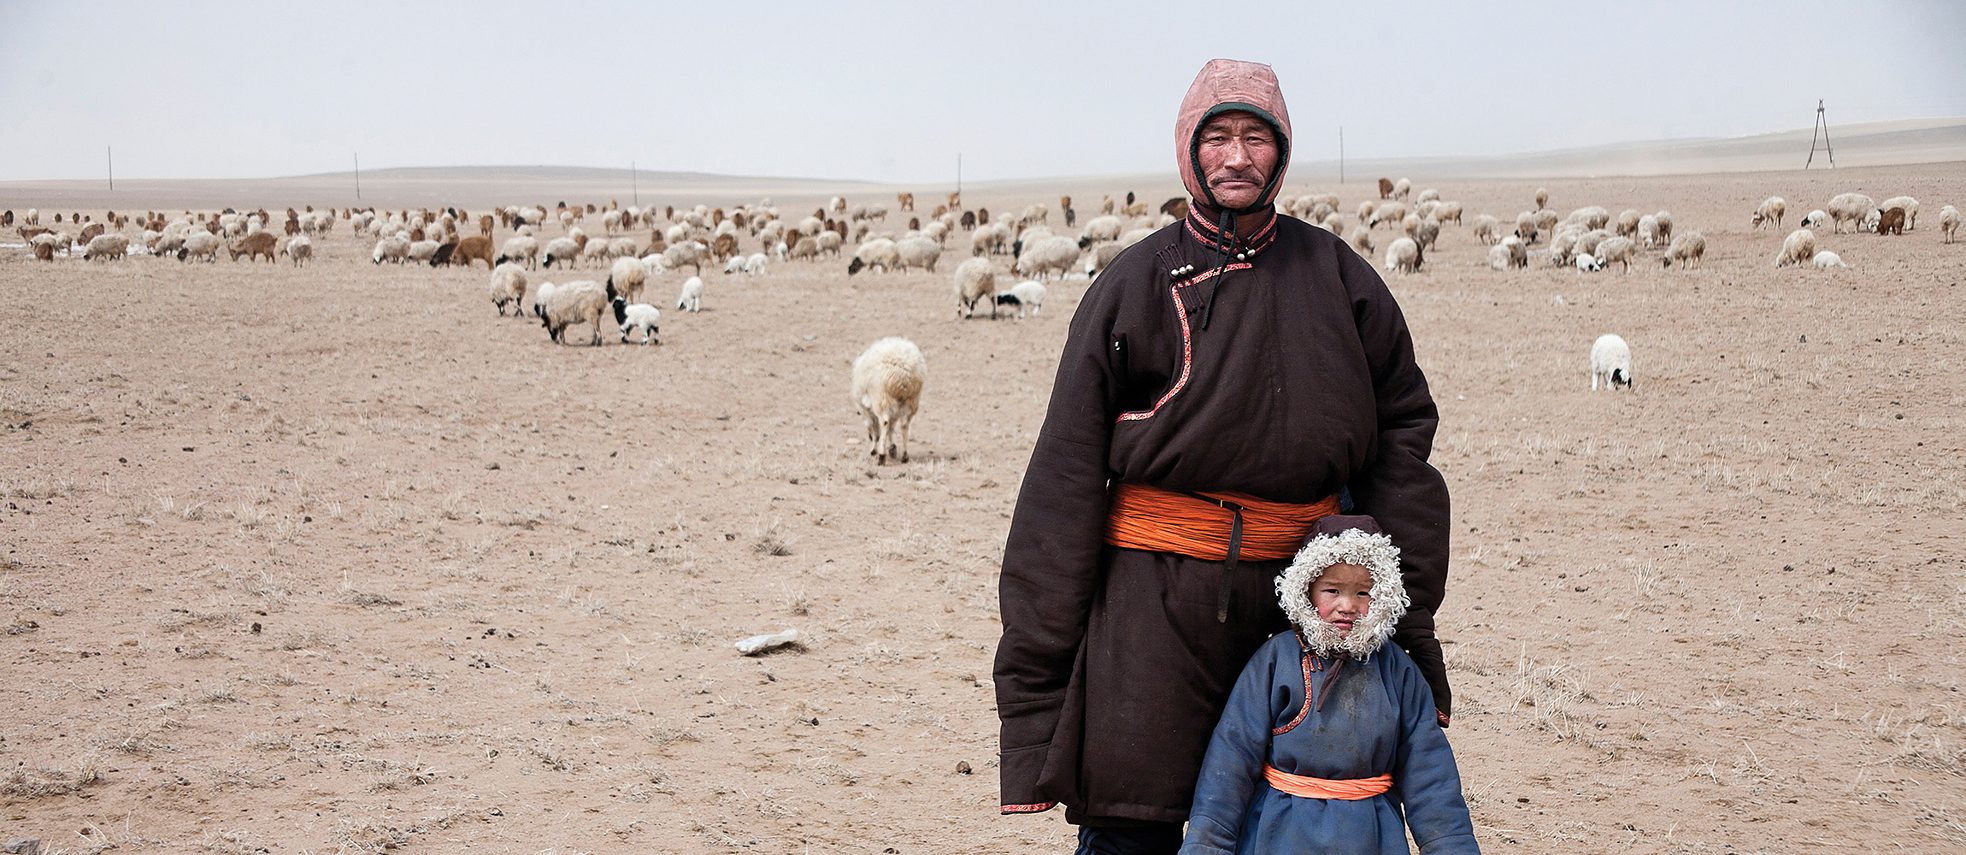 Ulan Bator, Mongolei: Fotografie-Residenzprogramm - Goethe-Institut